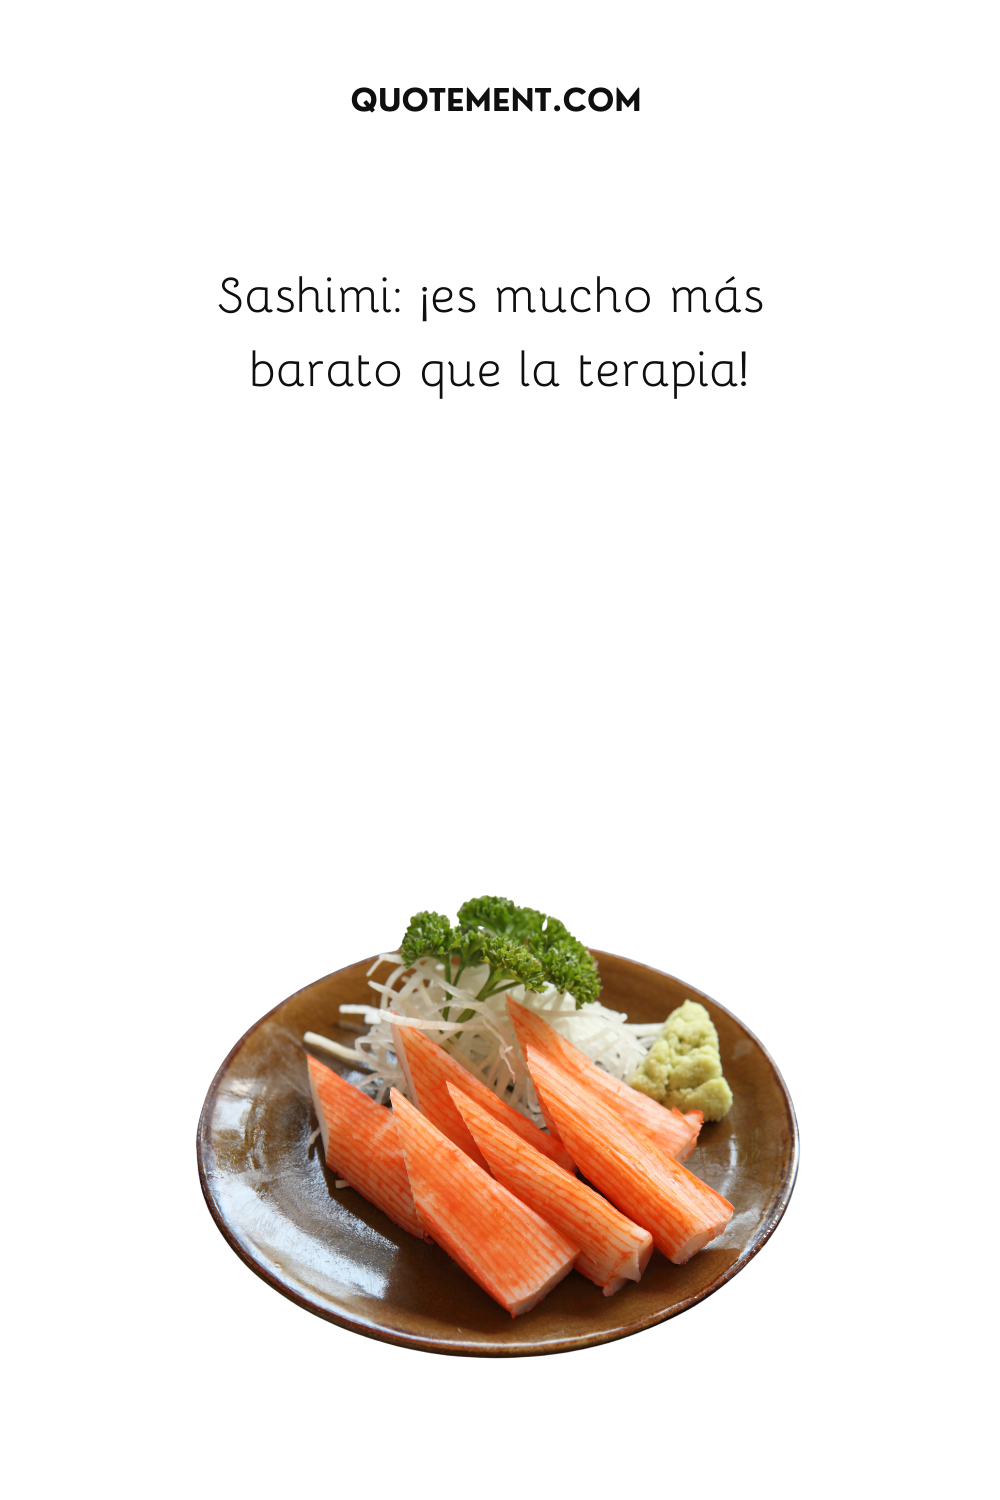 ¡El sashimi es mucho más barato que la terapia!